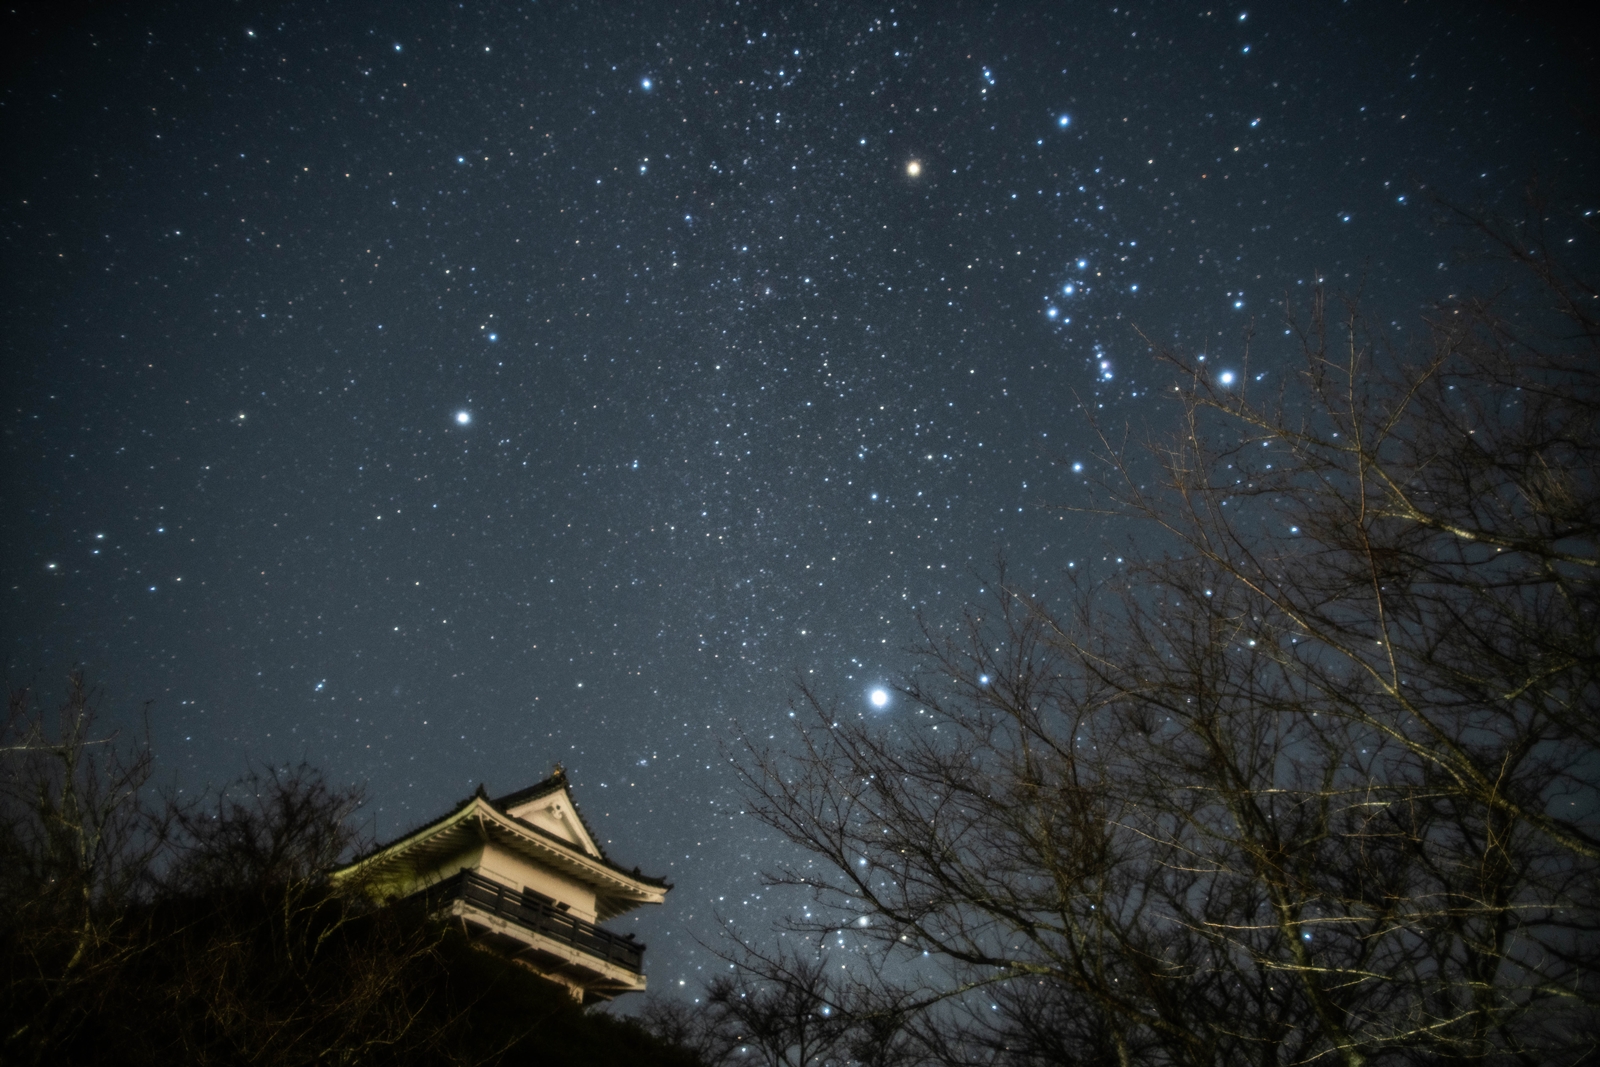 夜空を埋めるように、星々が青白く瞬いており、オリオン座や冬の大三角が鮮明に見え、下側にある木立の間から、天守閣の一部がそびえている万木城公園の写真